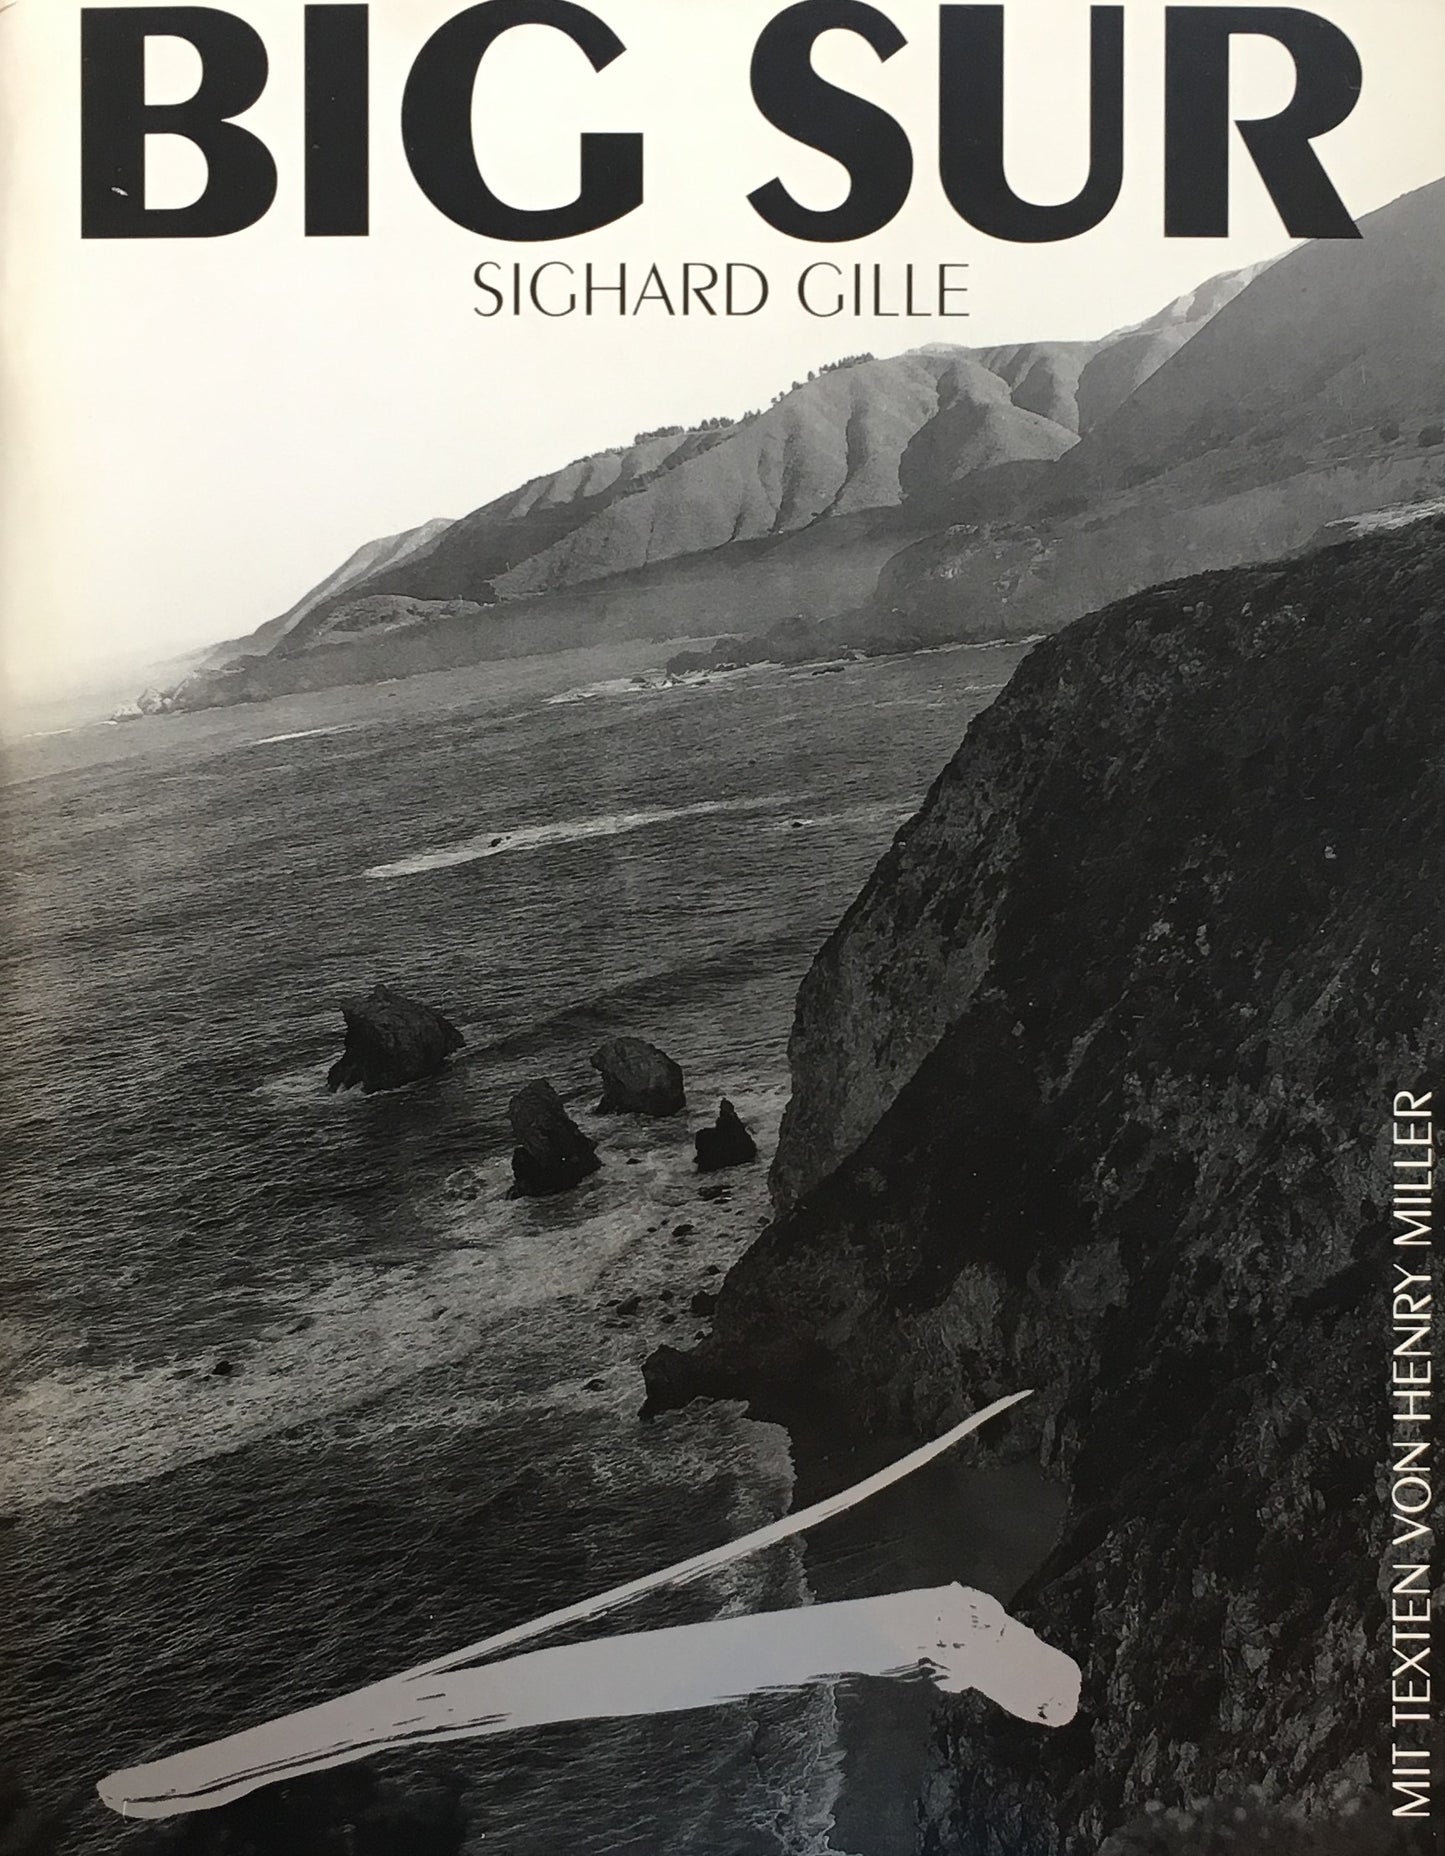 Big Sur Mit Texten von Henry Miller　Sighard Gille